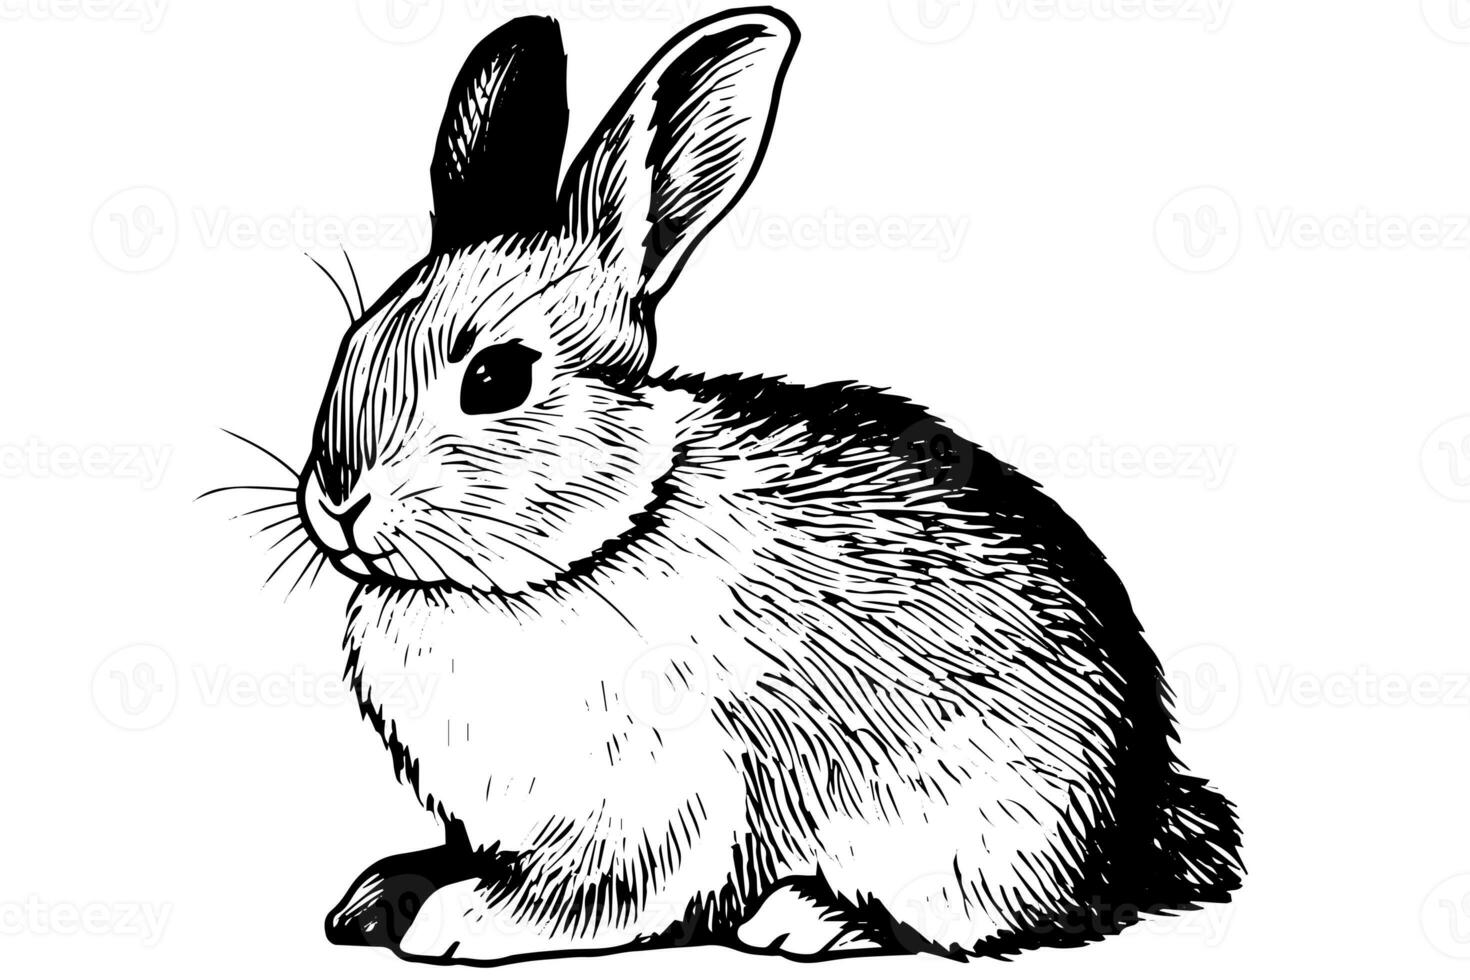 gravyr kanin på vit bakgrund .vektor bläck skiss illustration. foto